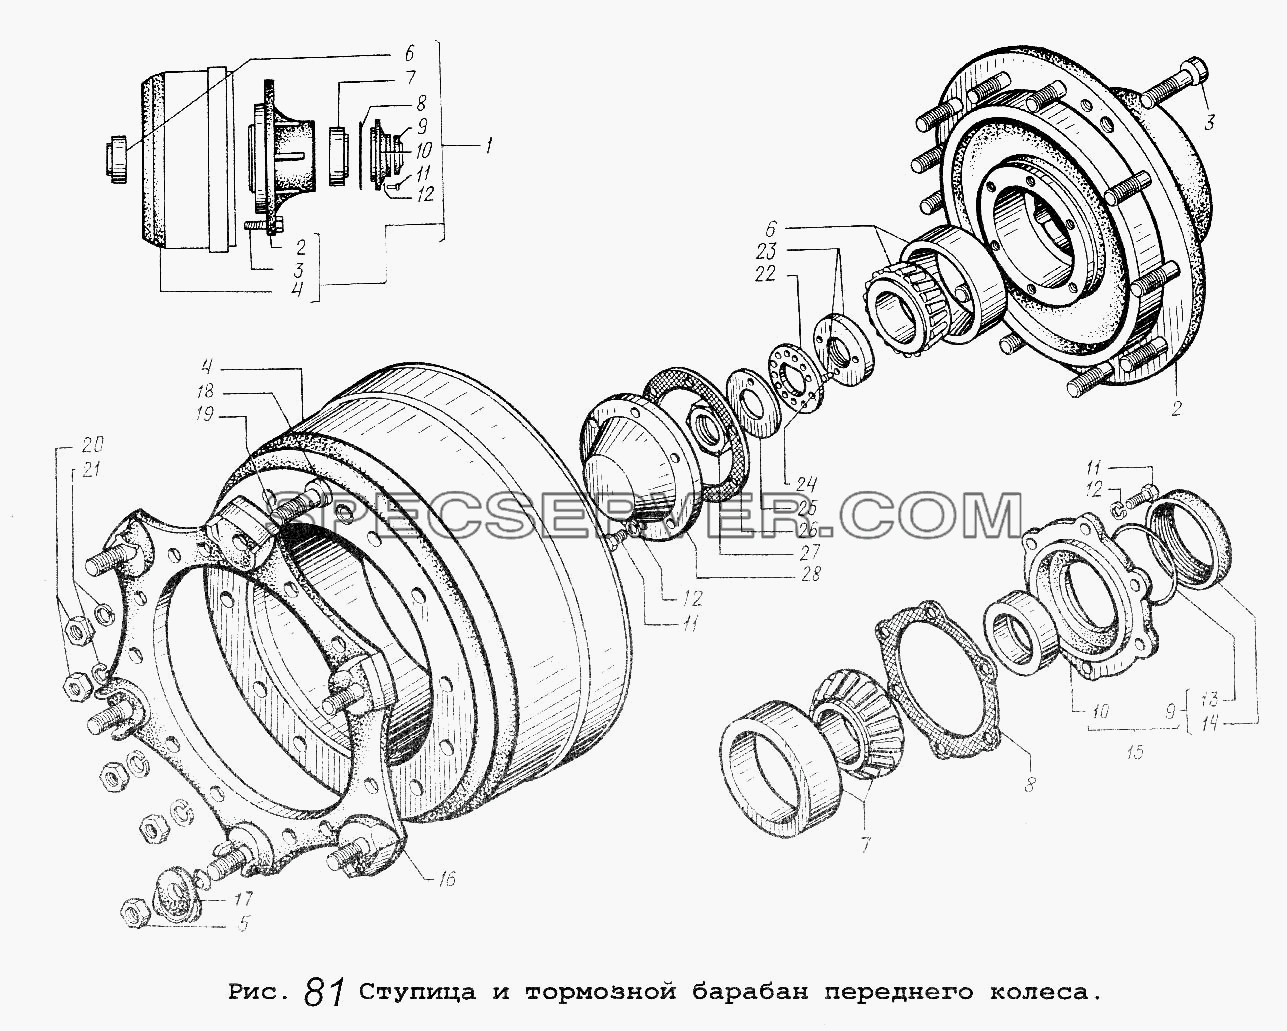 Ступица и тормозной барабан переднего колеса для МАЗ-5551 (список запасных частей)